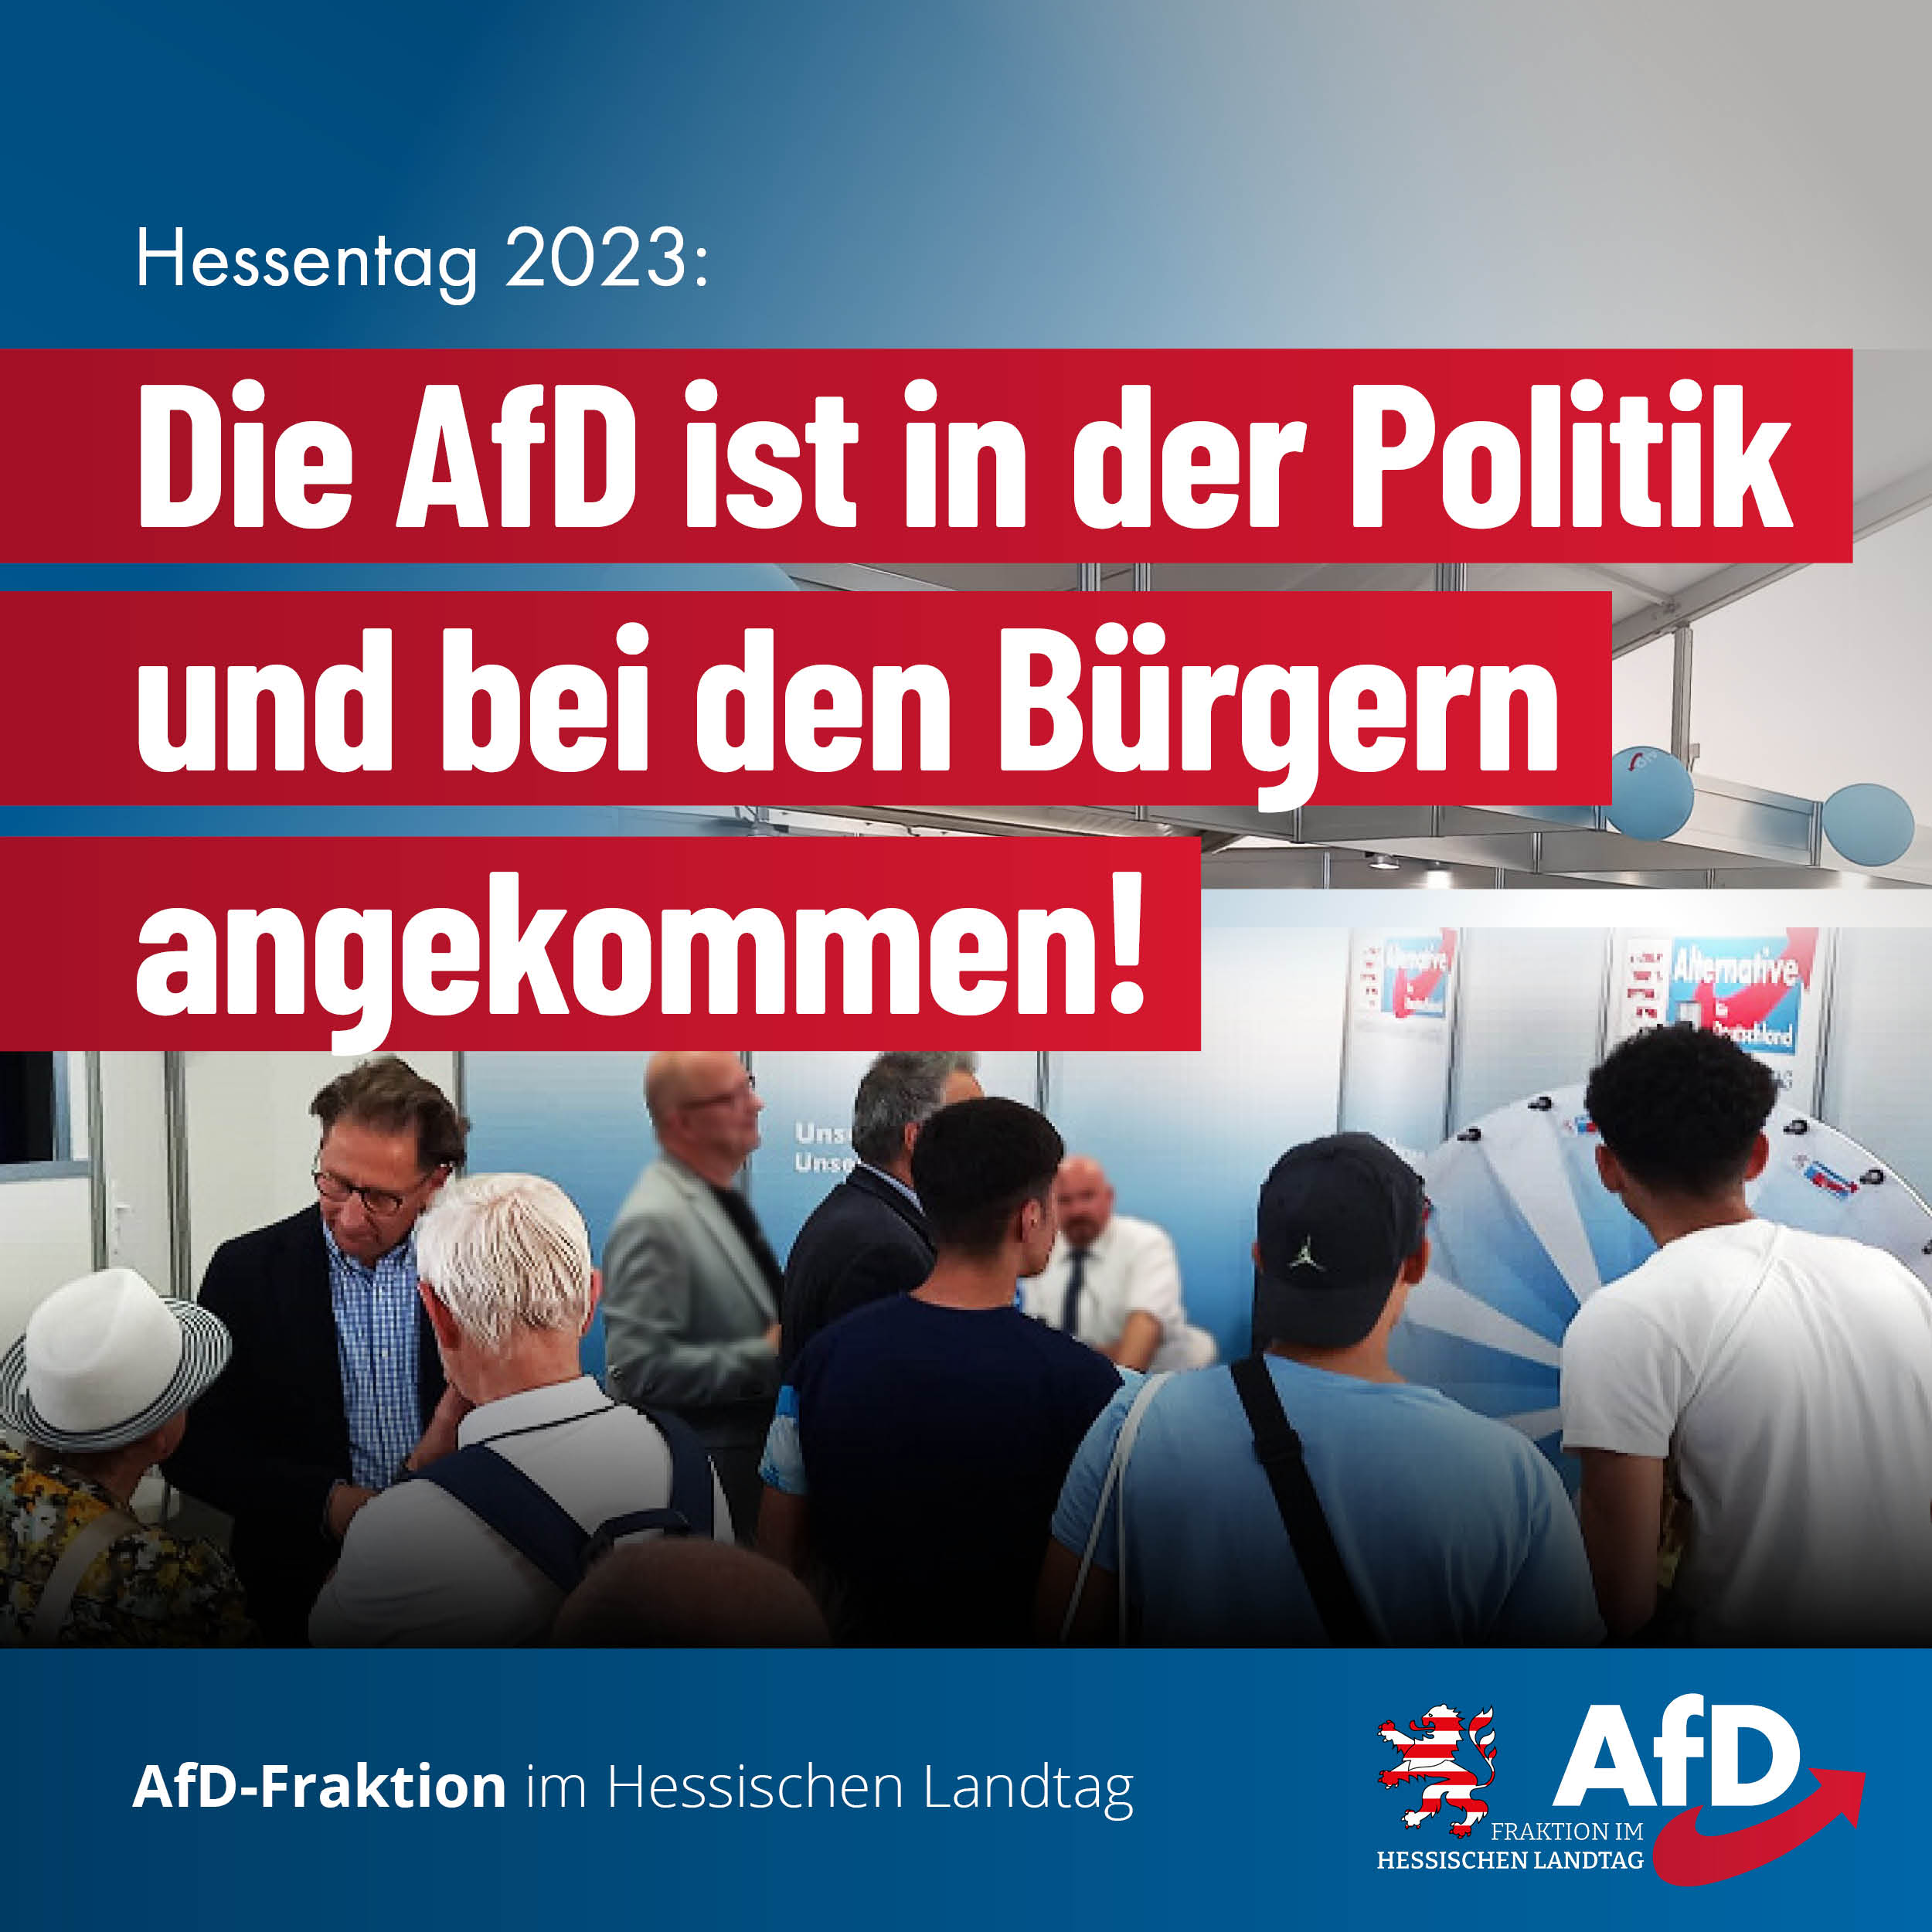 You are currently viewing Hessentag: Die AfD ist in der Politik und bei den Bürgern angekommen!